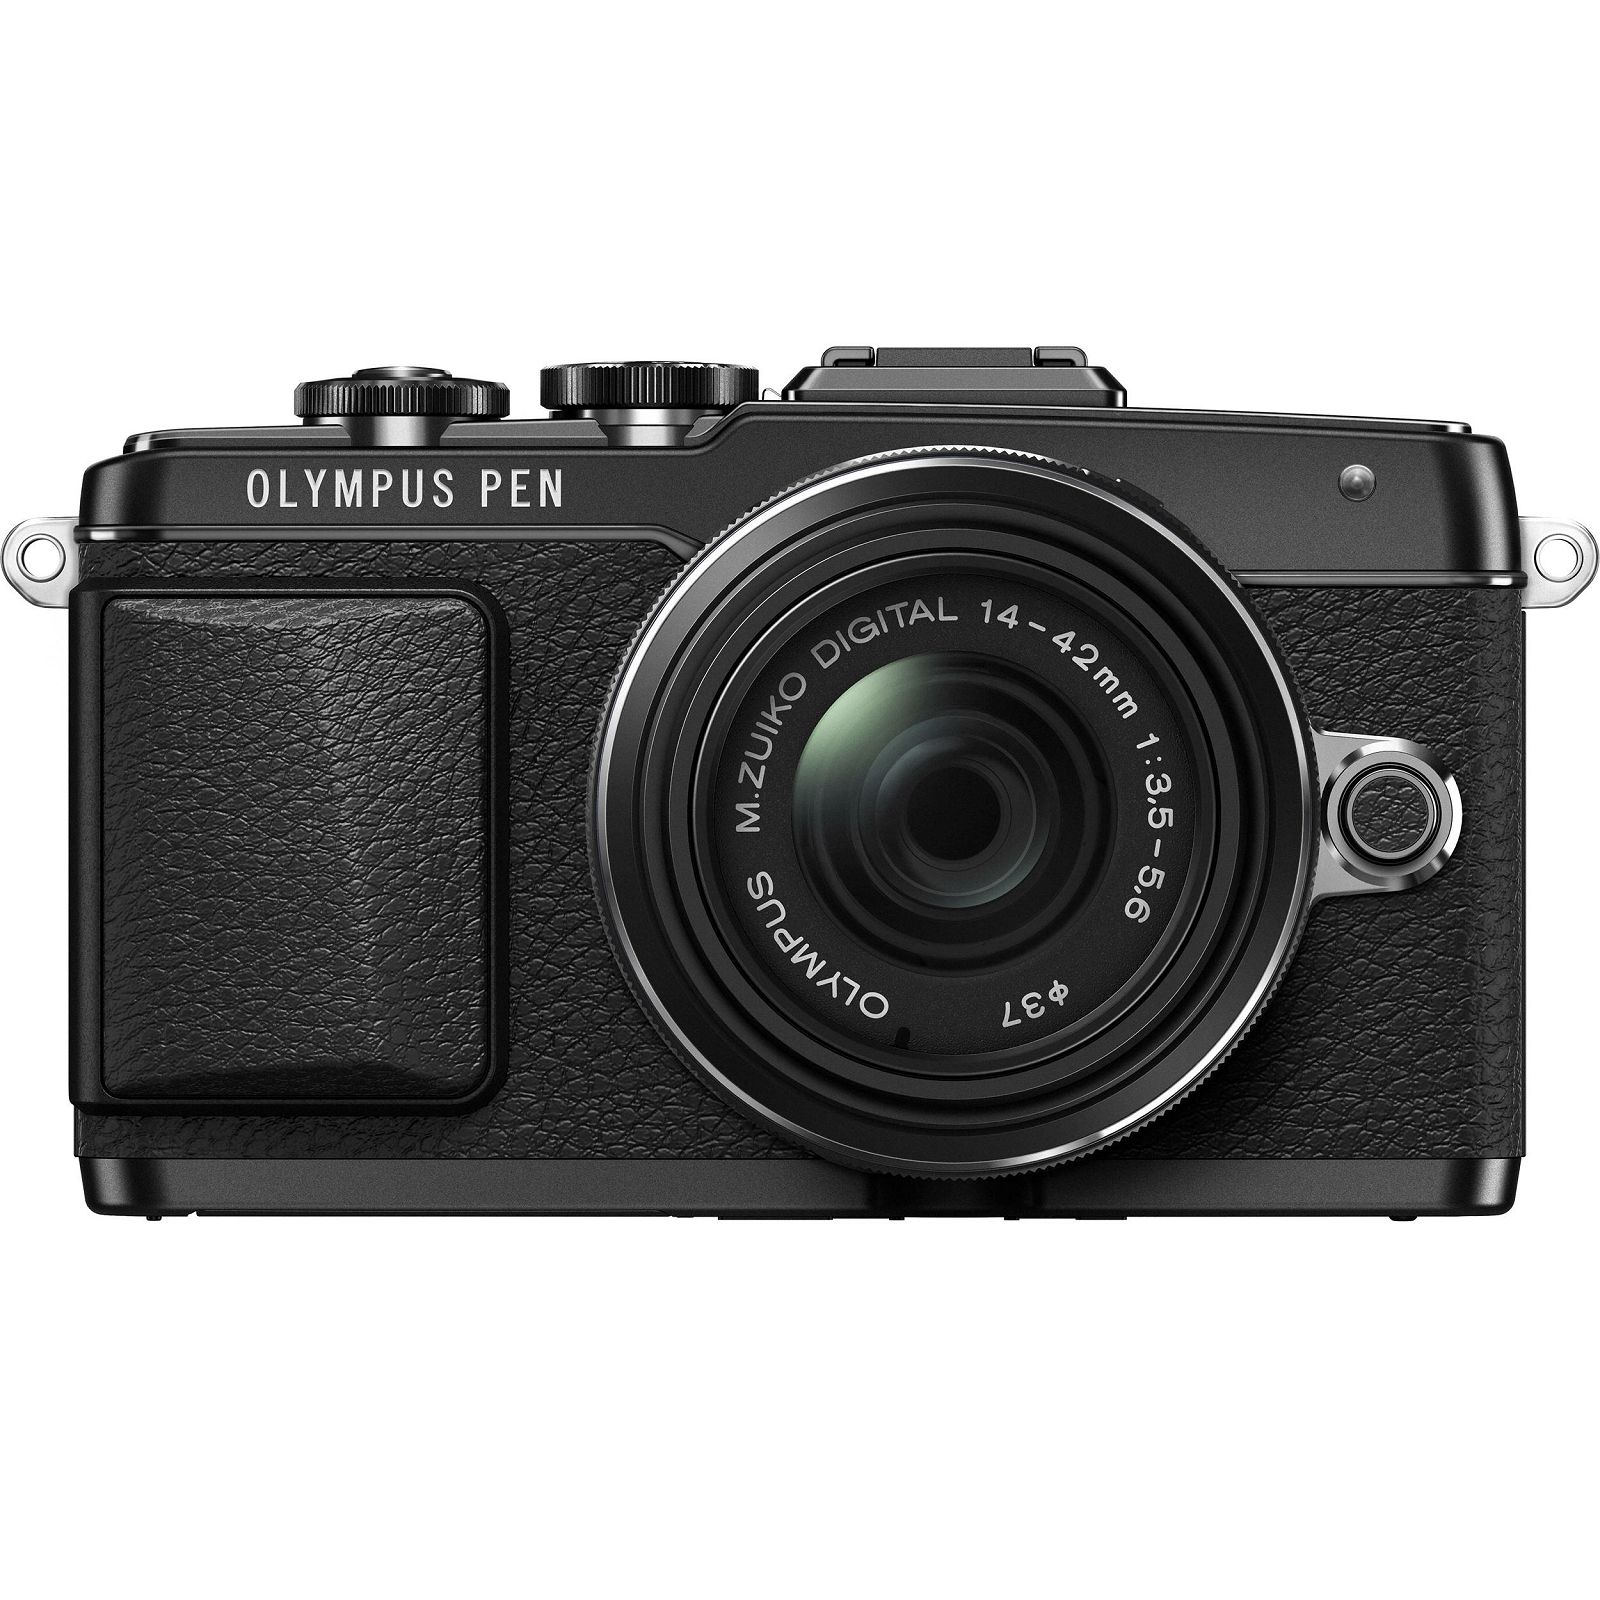 Olympus E-PL7 + 14-42mm black EZ-M1442 II R black Kit - incl. Charger + Battery 14-42 Micro Four Thirds MFT - PEN Camera digitalni fotoaparat V205071BE000